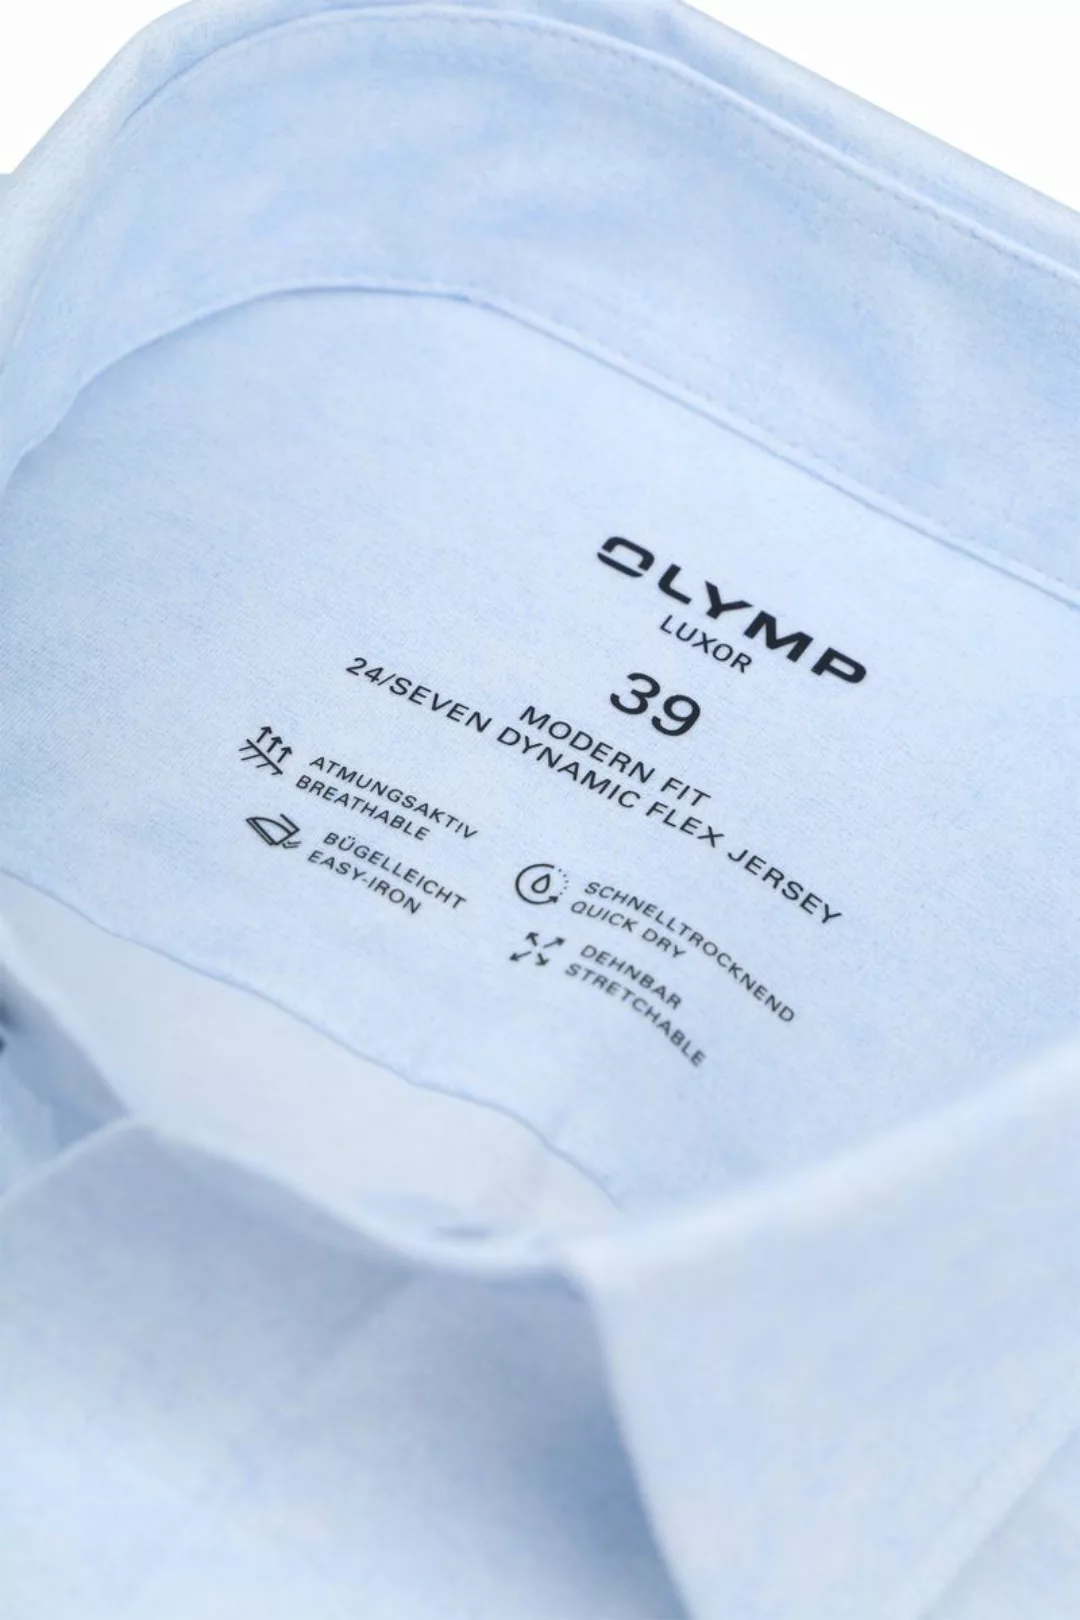 OLYMP Luxor Hemd Stretch Hellblau  - Größe 42 günstig online kaufen